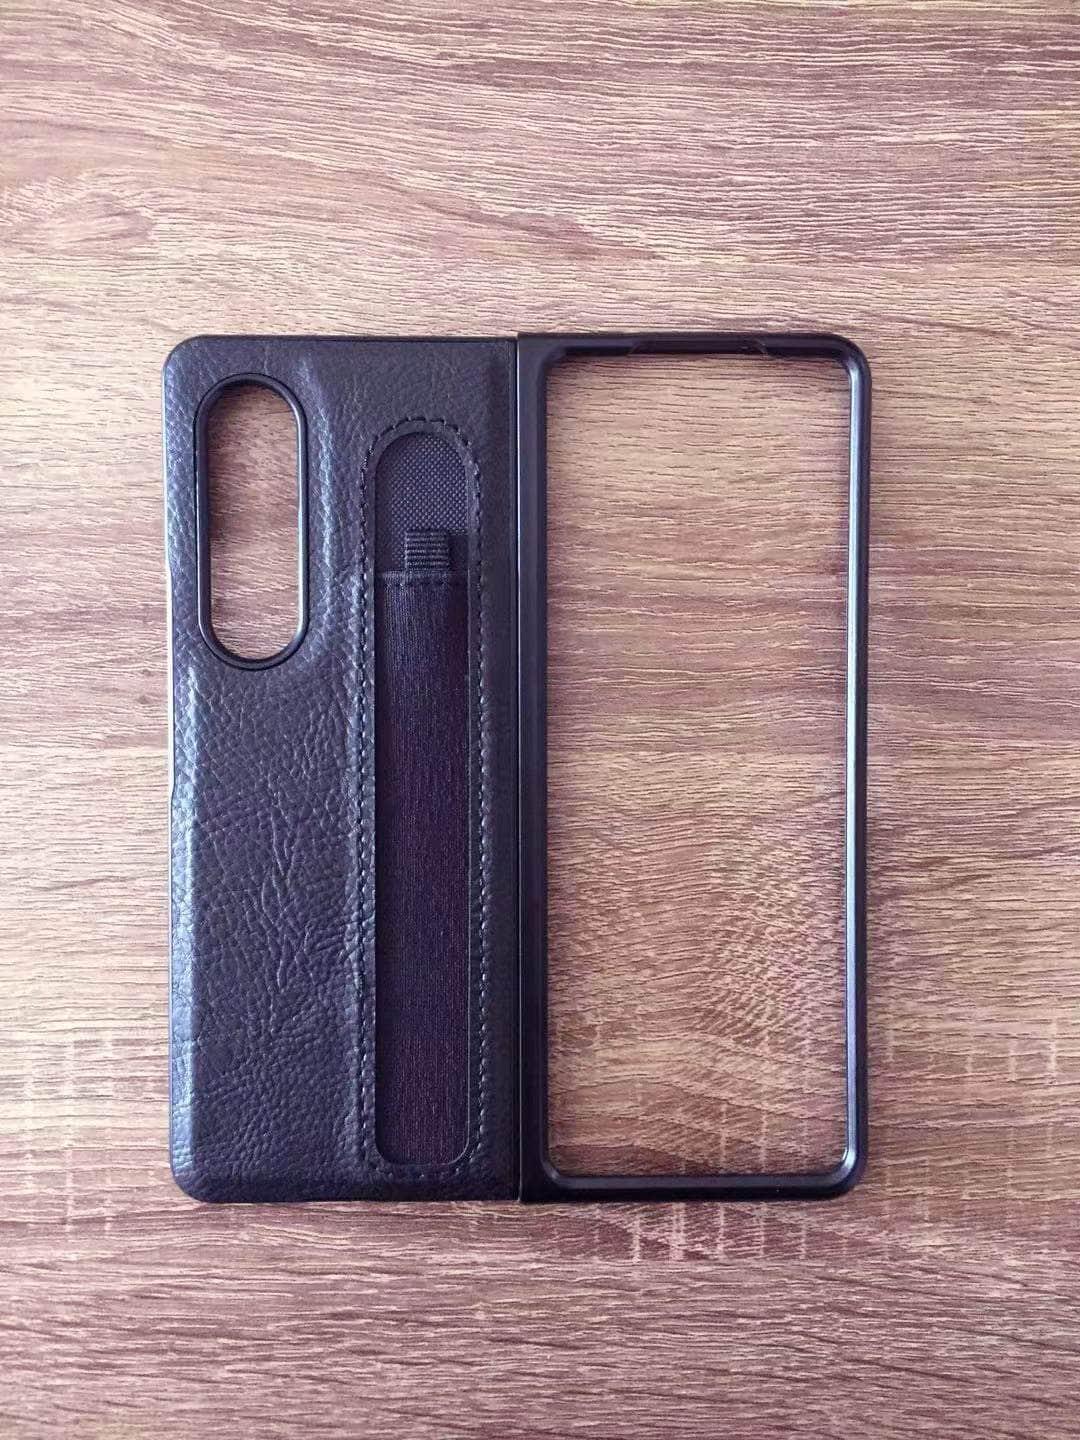 Casebuddy Black / Fold4 Galaxy Z Fold 4 Stylus Pen Slot Case